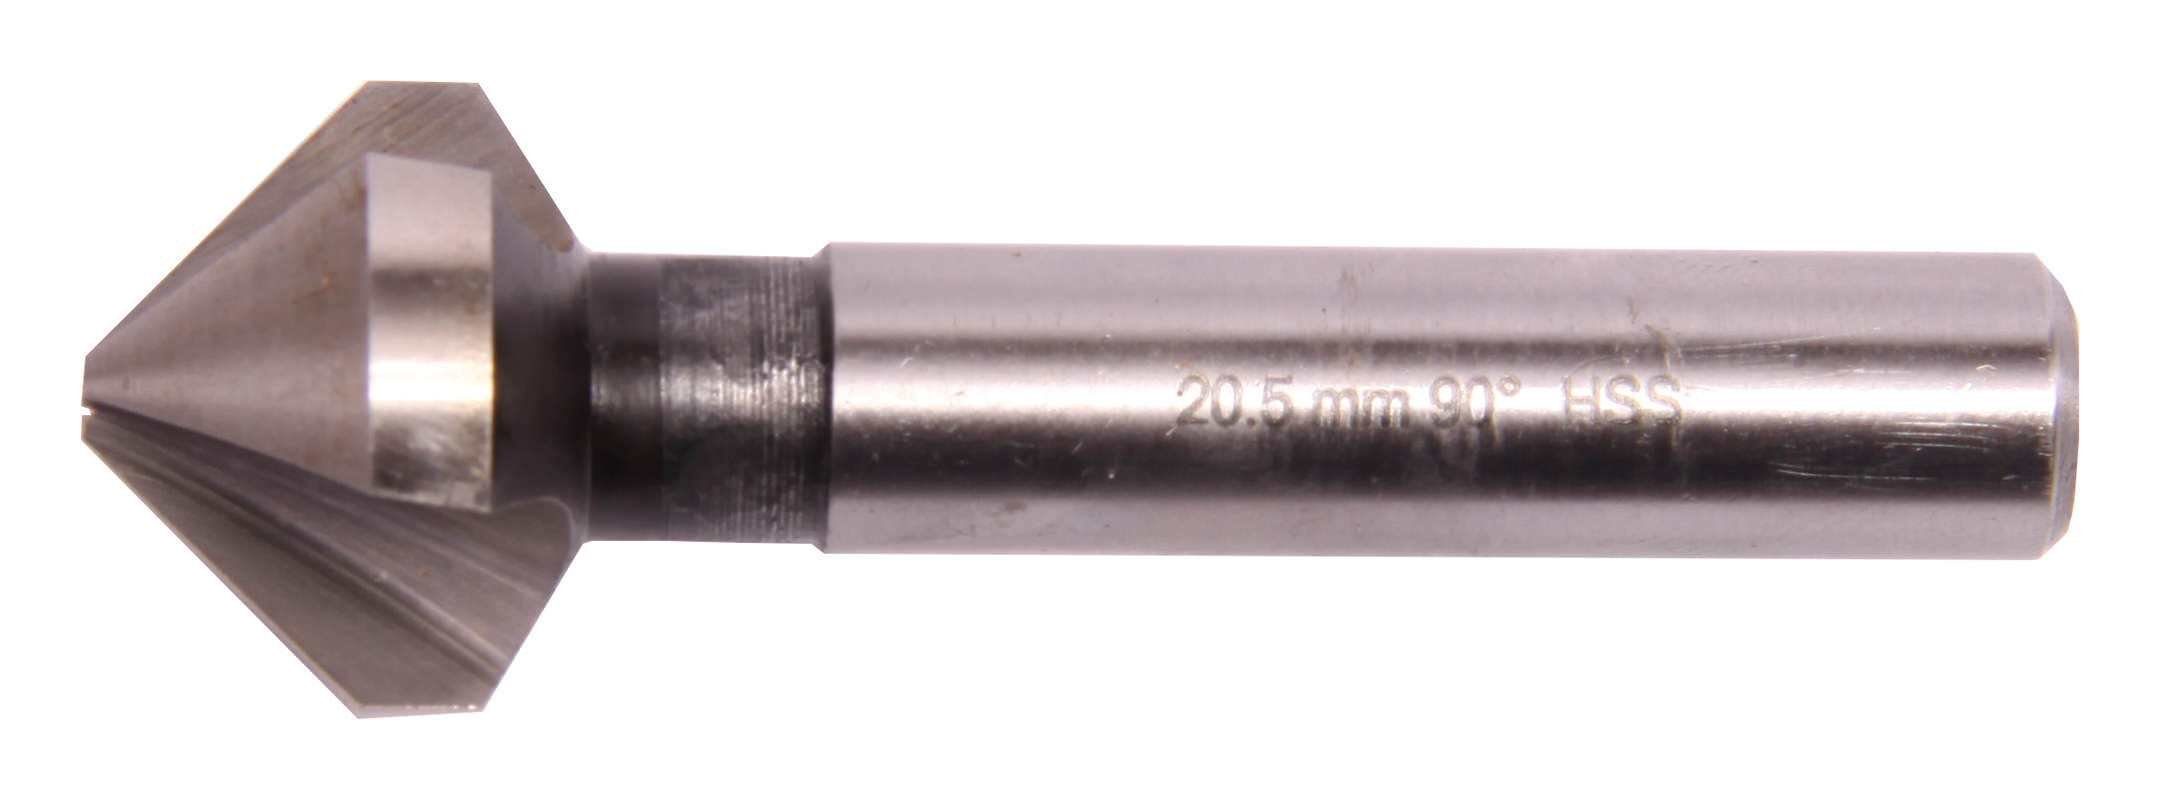 fortis Metallbohrer, Kegelsenker D335C Metall HSS 90 Grad 8,3 mm